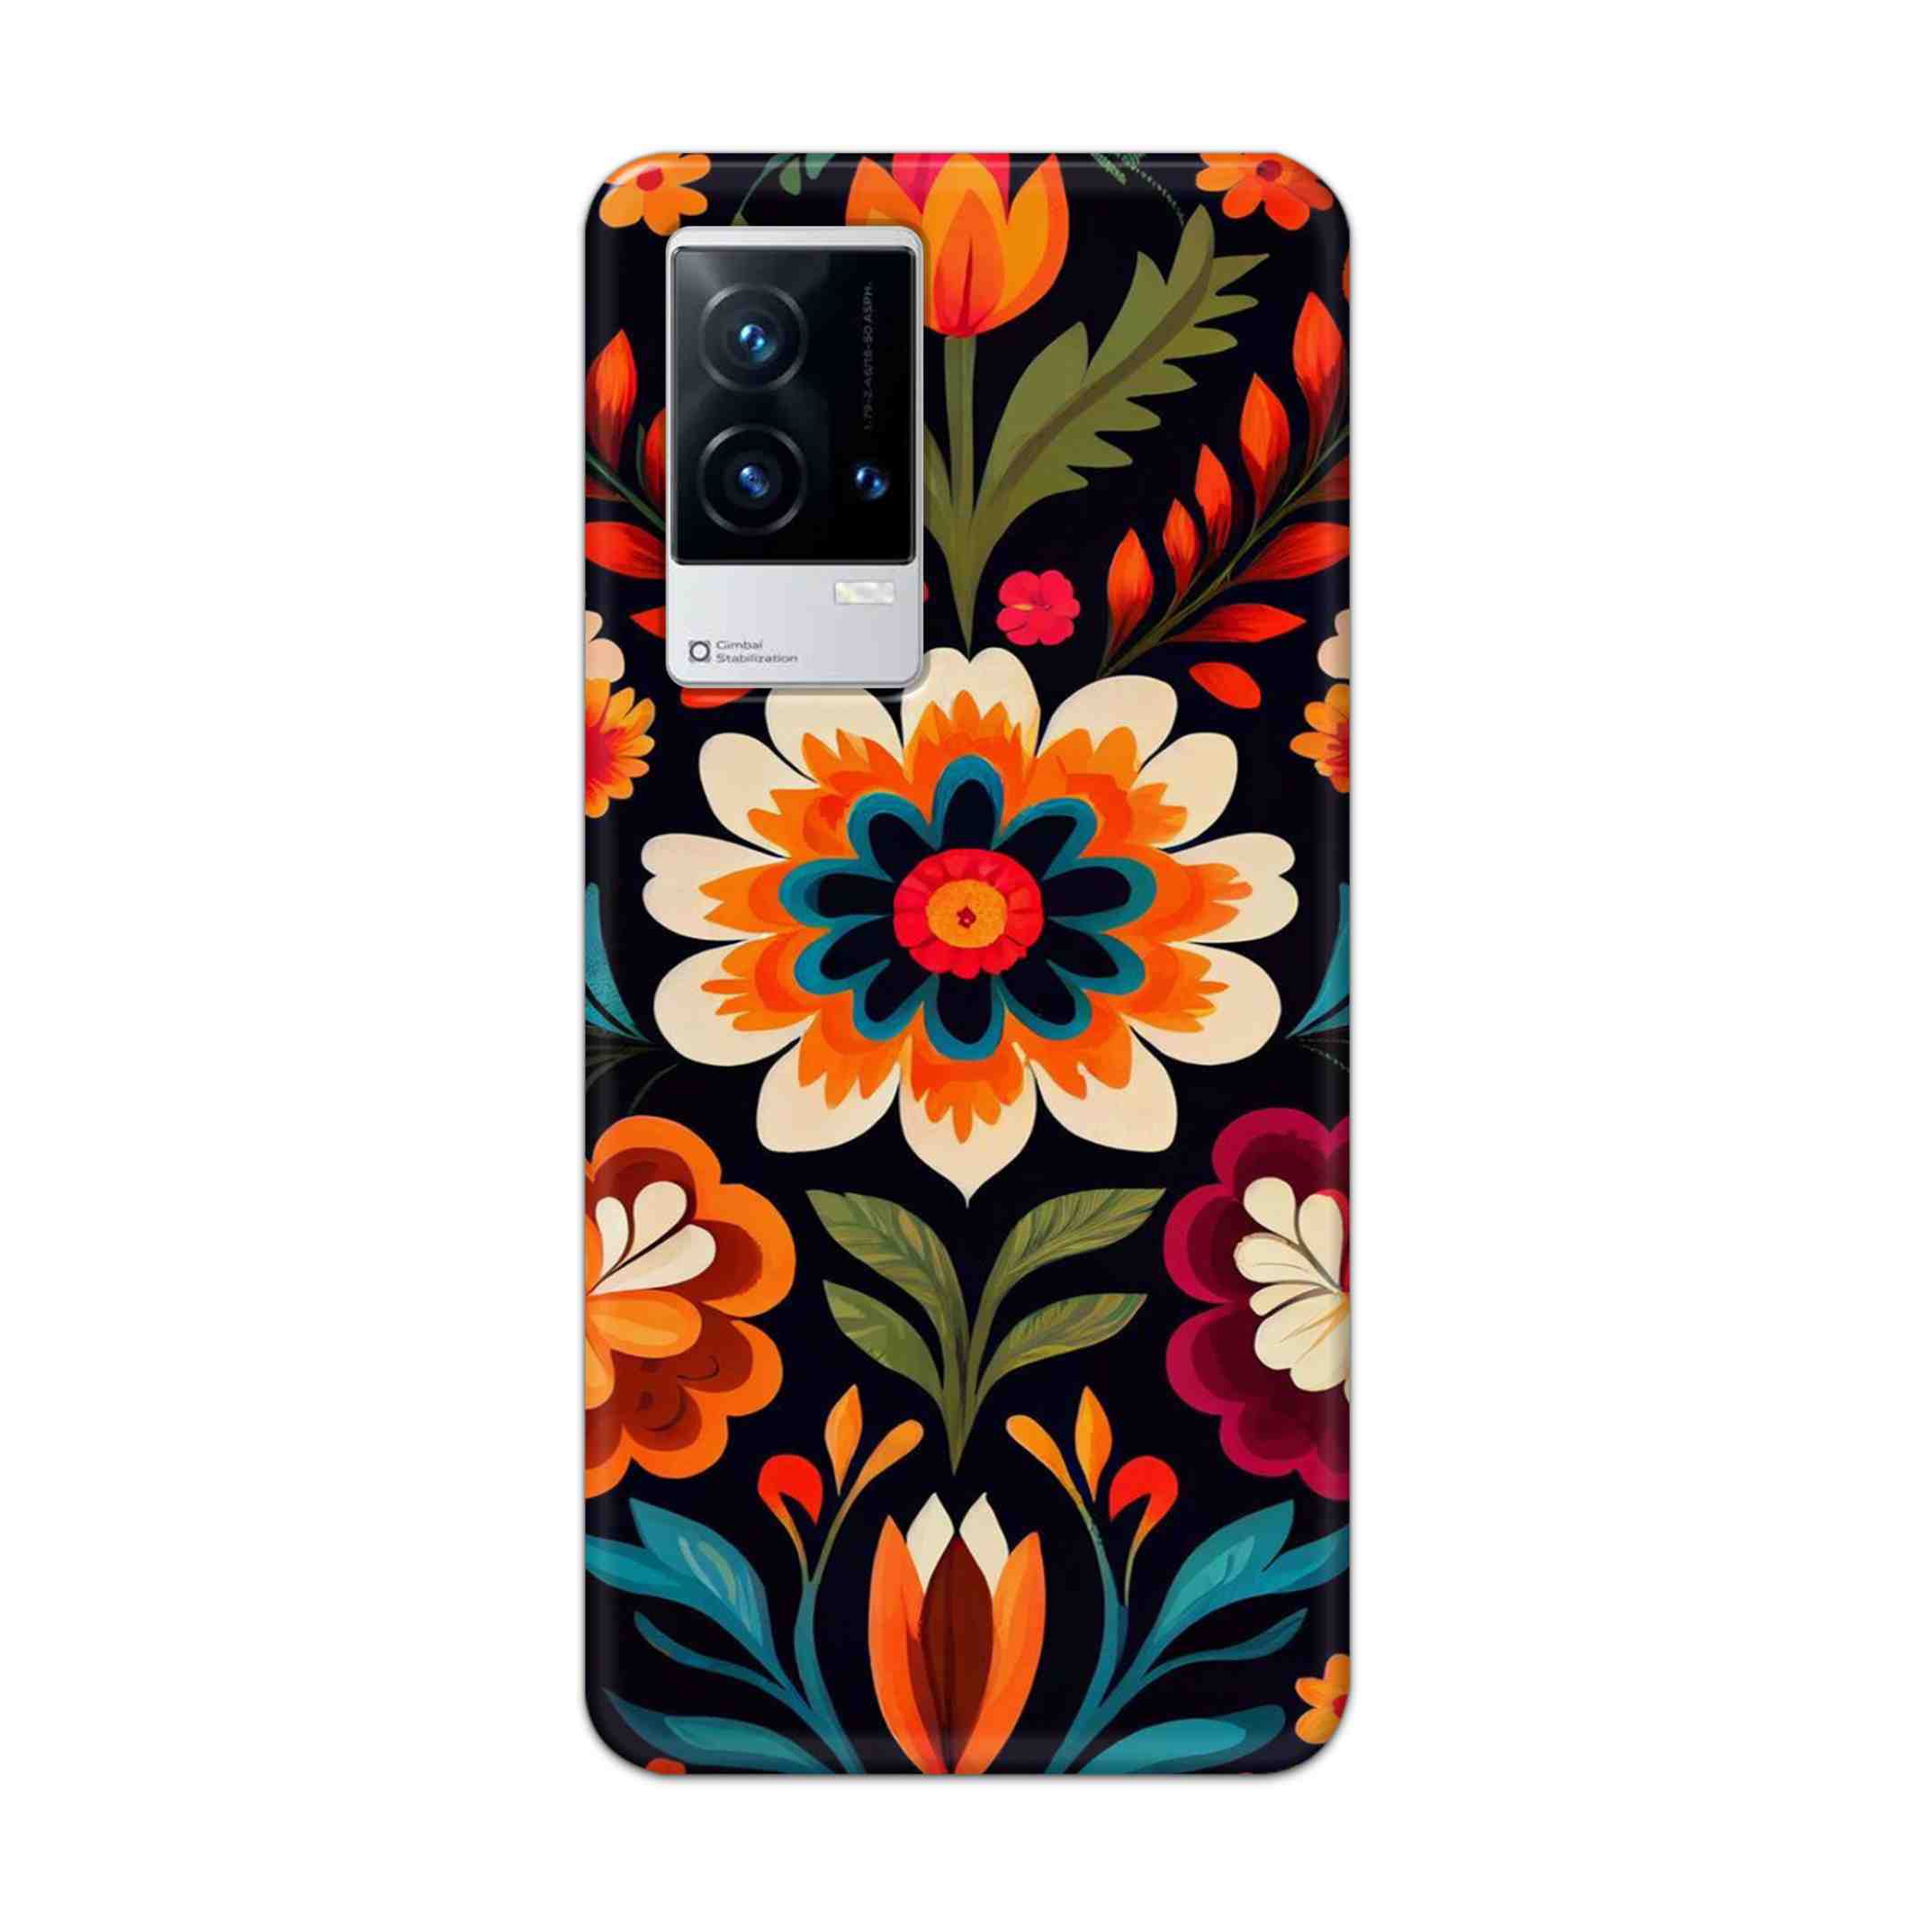 Buy Flower Hard Back Mobile Phone Case Cover For Vivo iQOO 9 5G Online